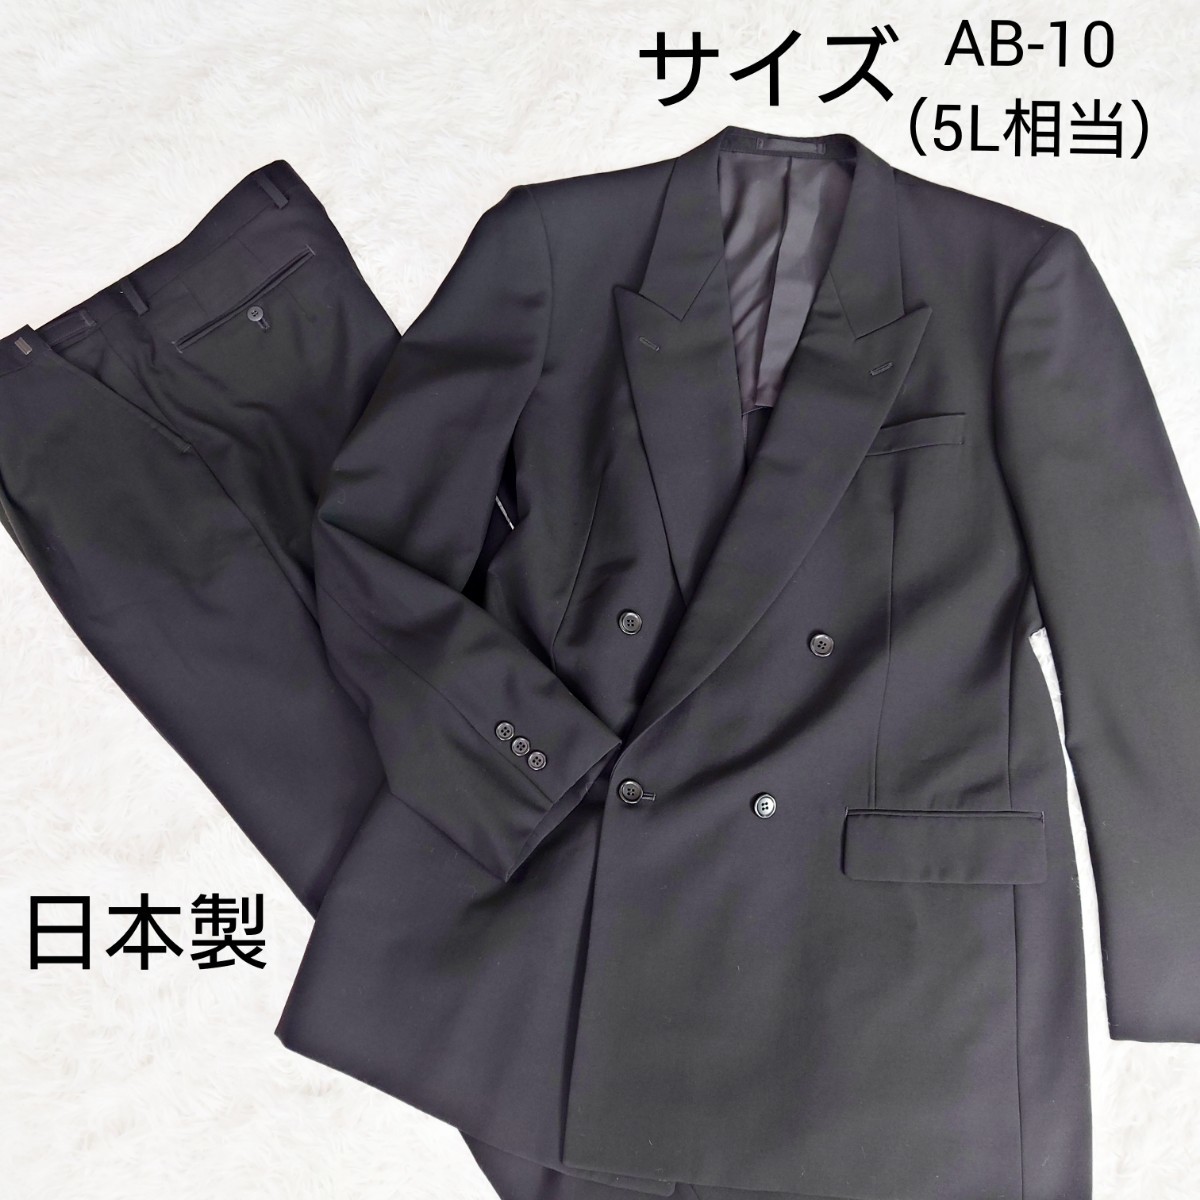 【大きいサイズ】特大 セットアップ スーツ ダブル 喪服 礼服 ブラックフォーマル AB10（5L相当） 冠婚葬祭 背抜き ビジネス セレモニー